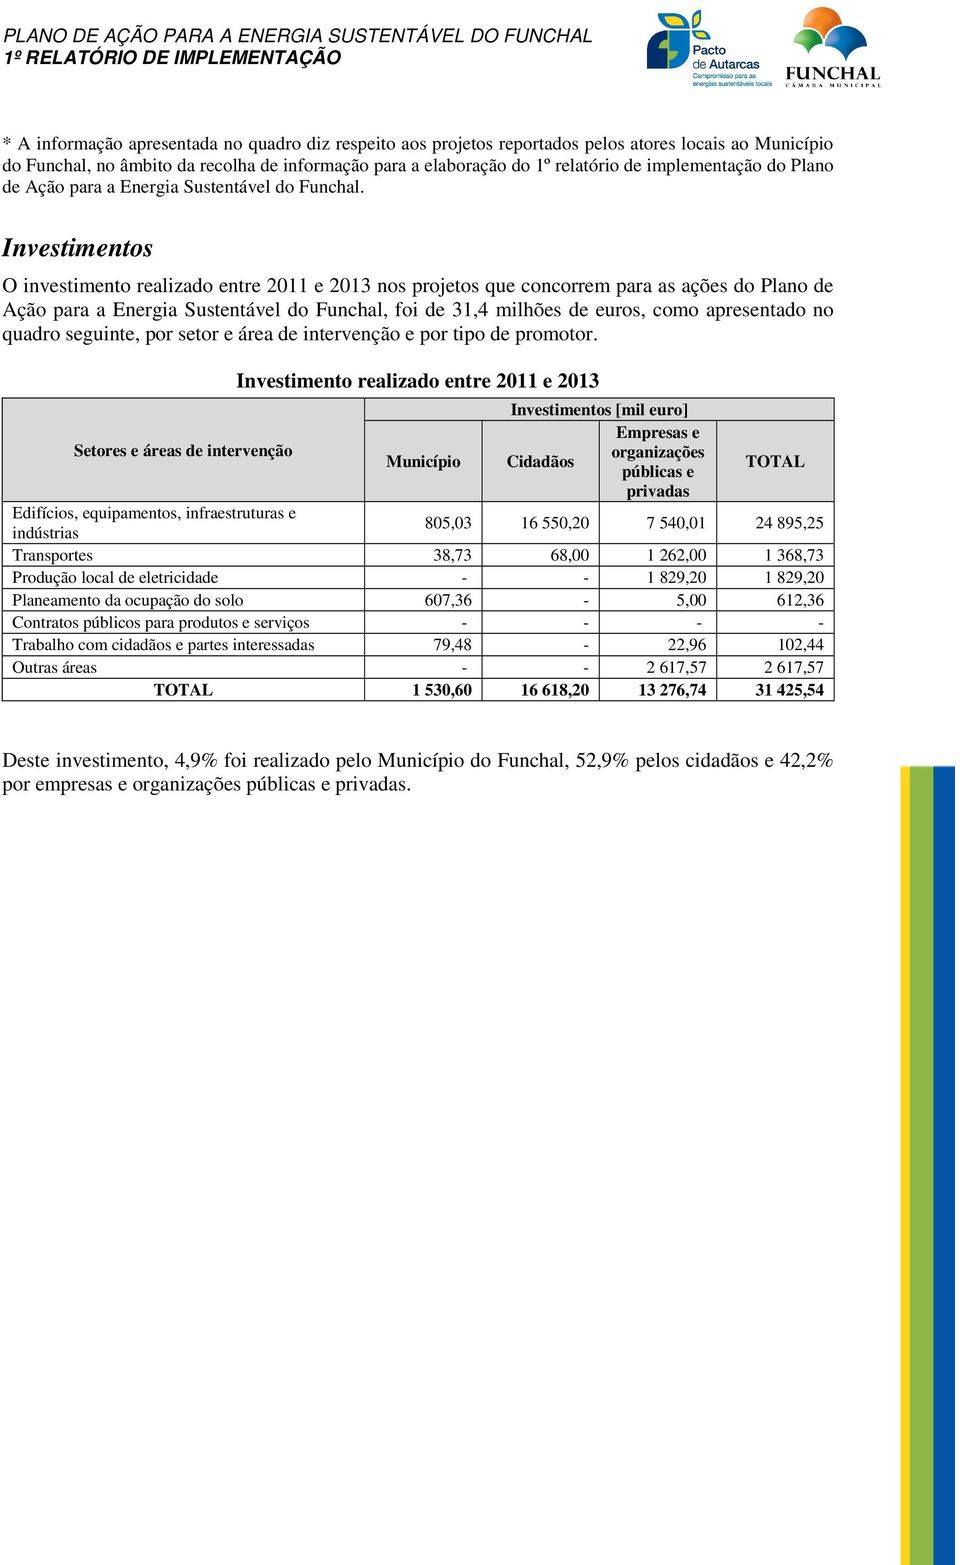 Investimentos O investimento realizado entre 2011 e 2013 nos projetos que concorrem para as ações do Plano de Ação para a Energia Sustentável do Funchal, foi de 31,4 milhões de euros, como